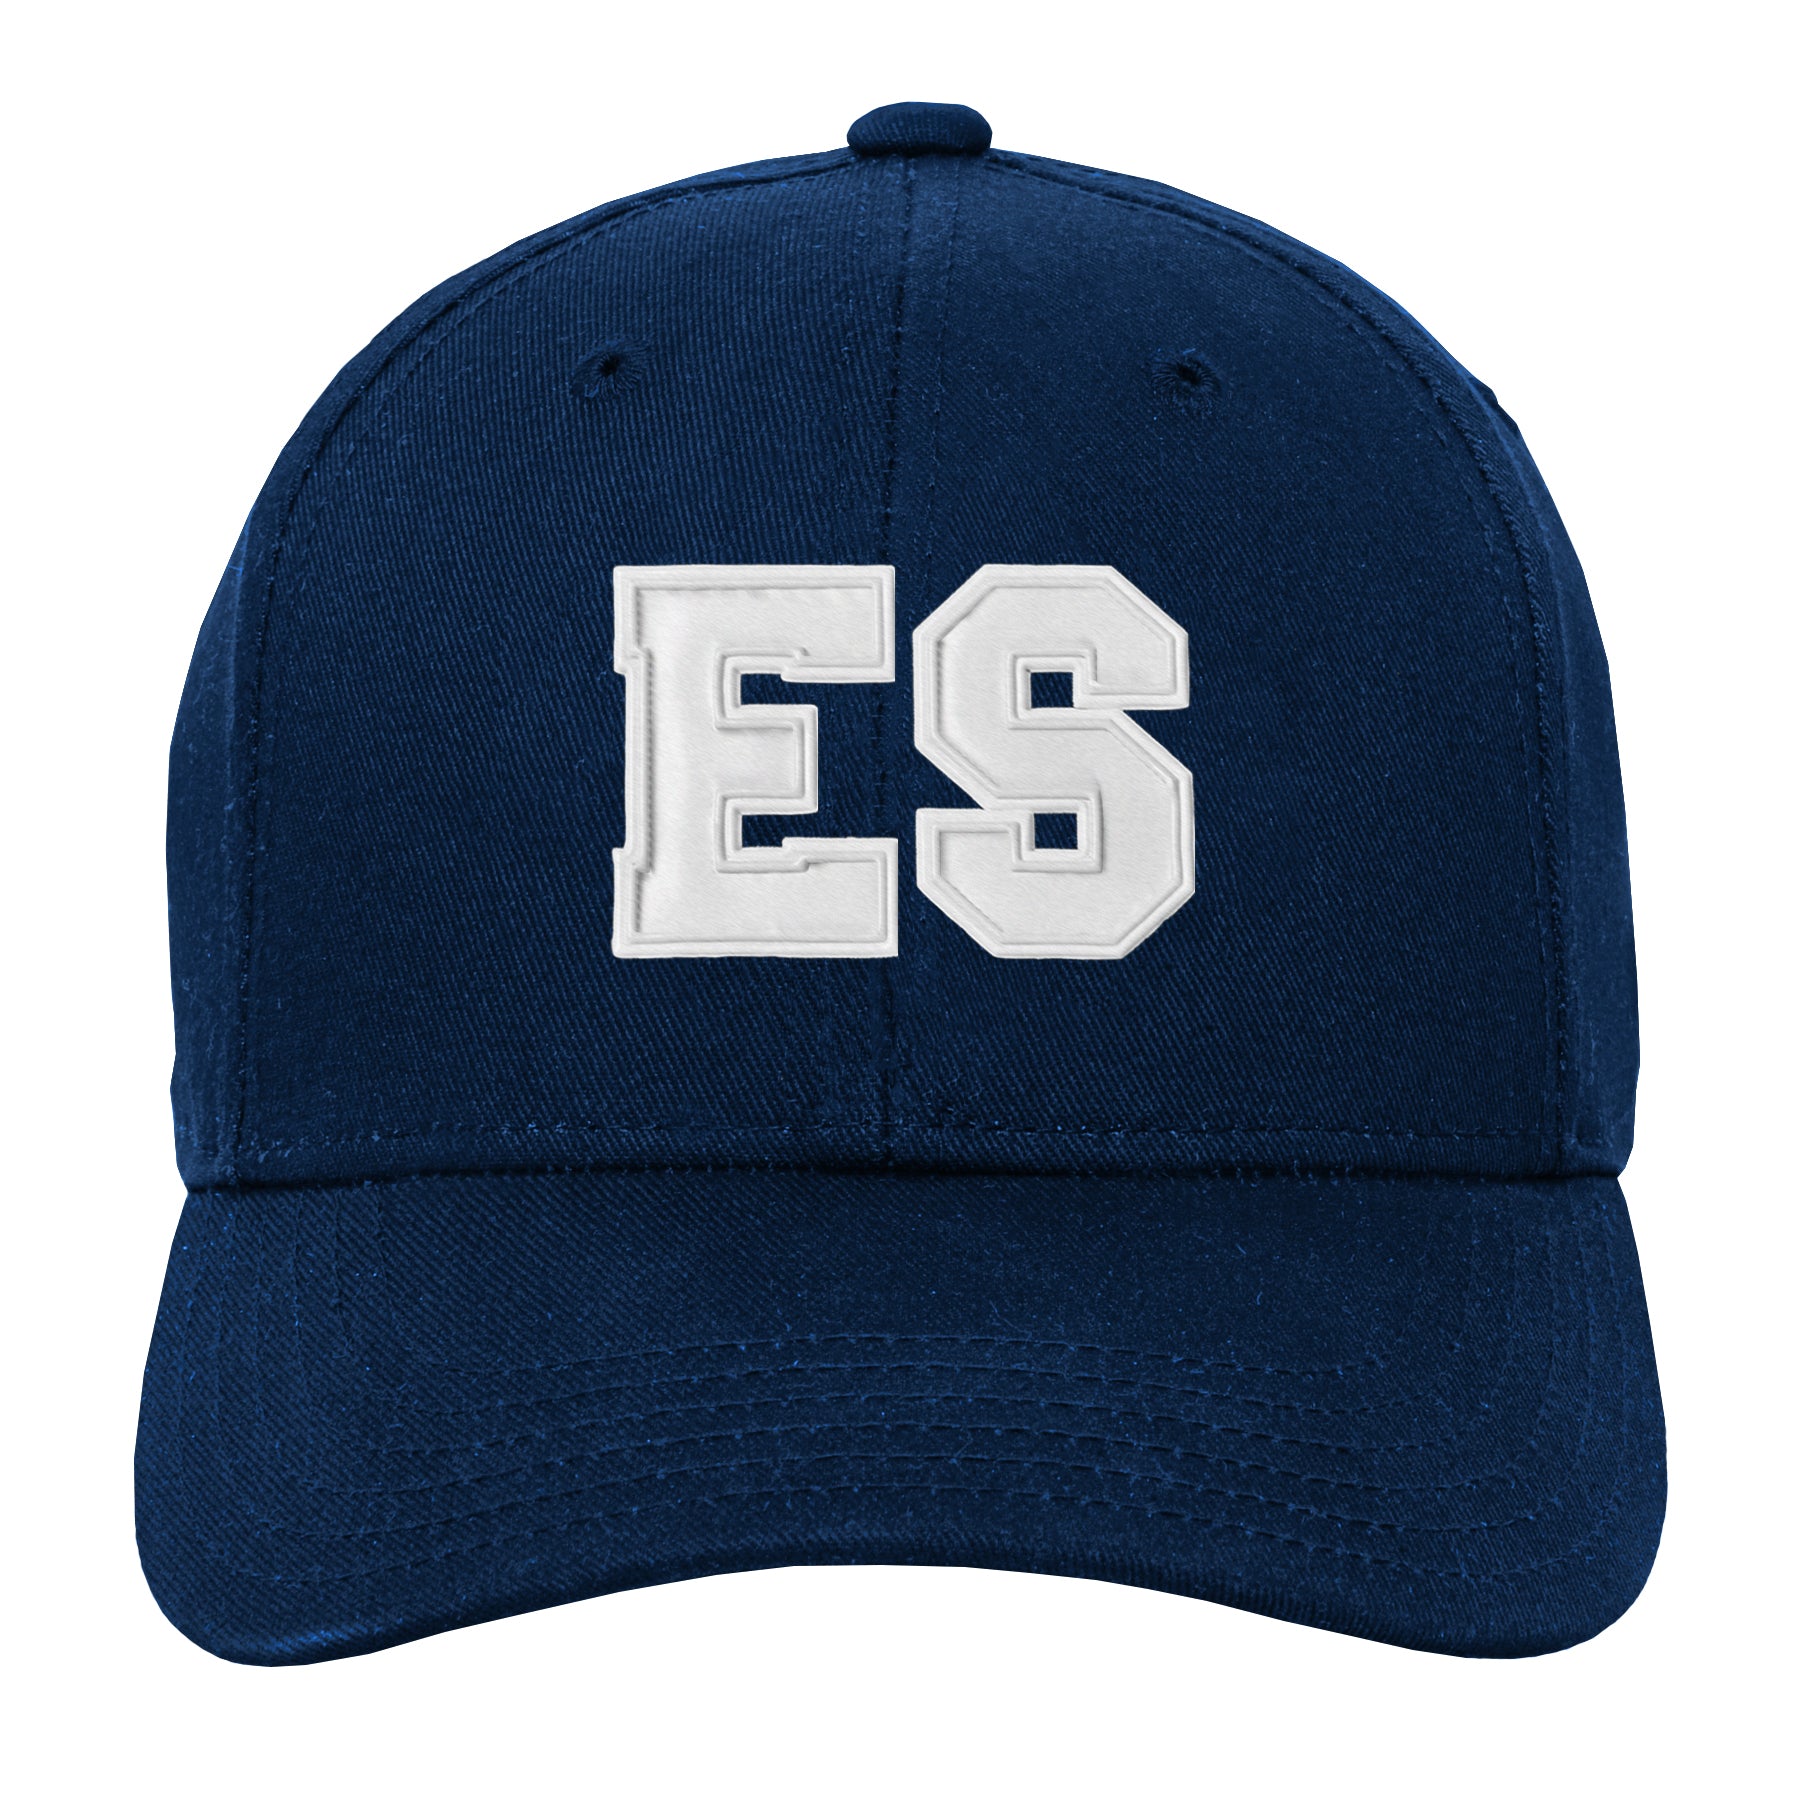 El Salvador Hat, Salvadorian Hat, Sun Hat, Adjustable, Cachuchas